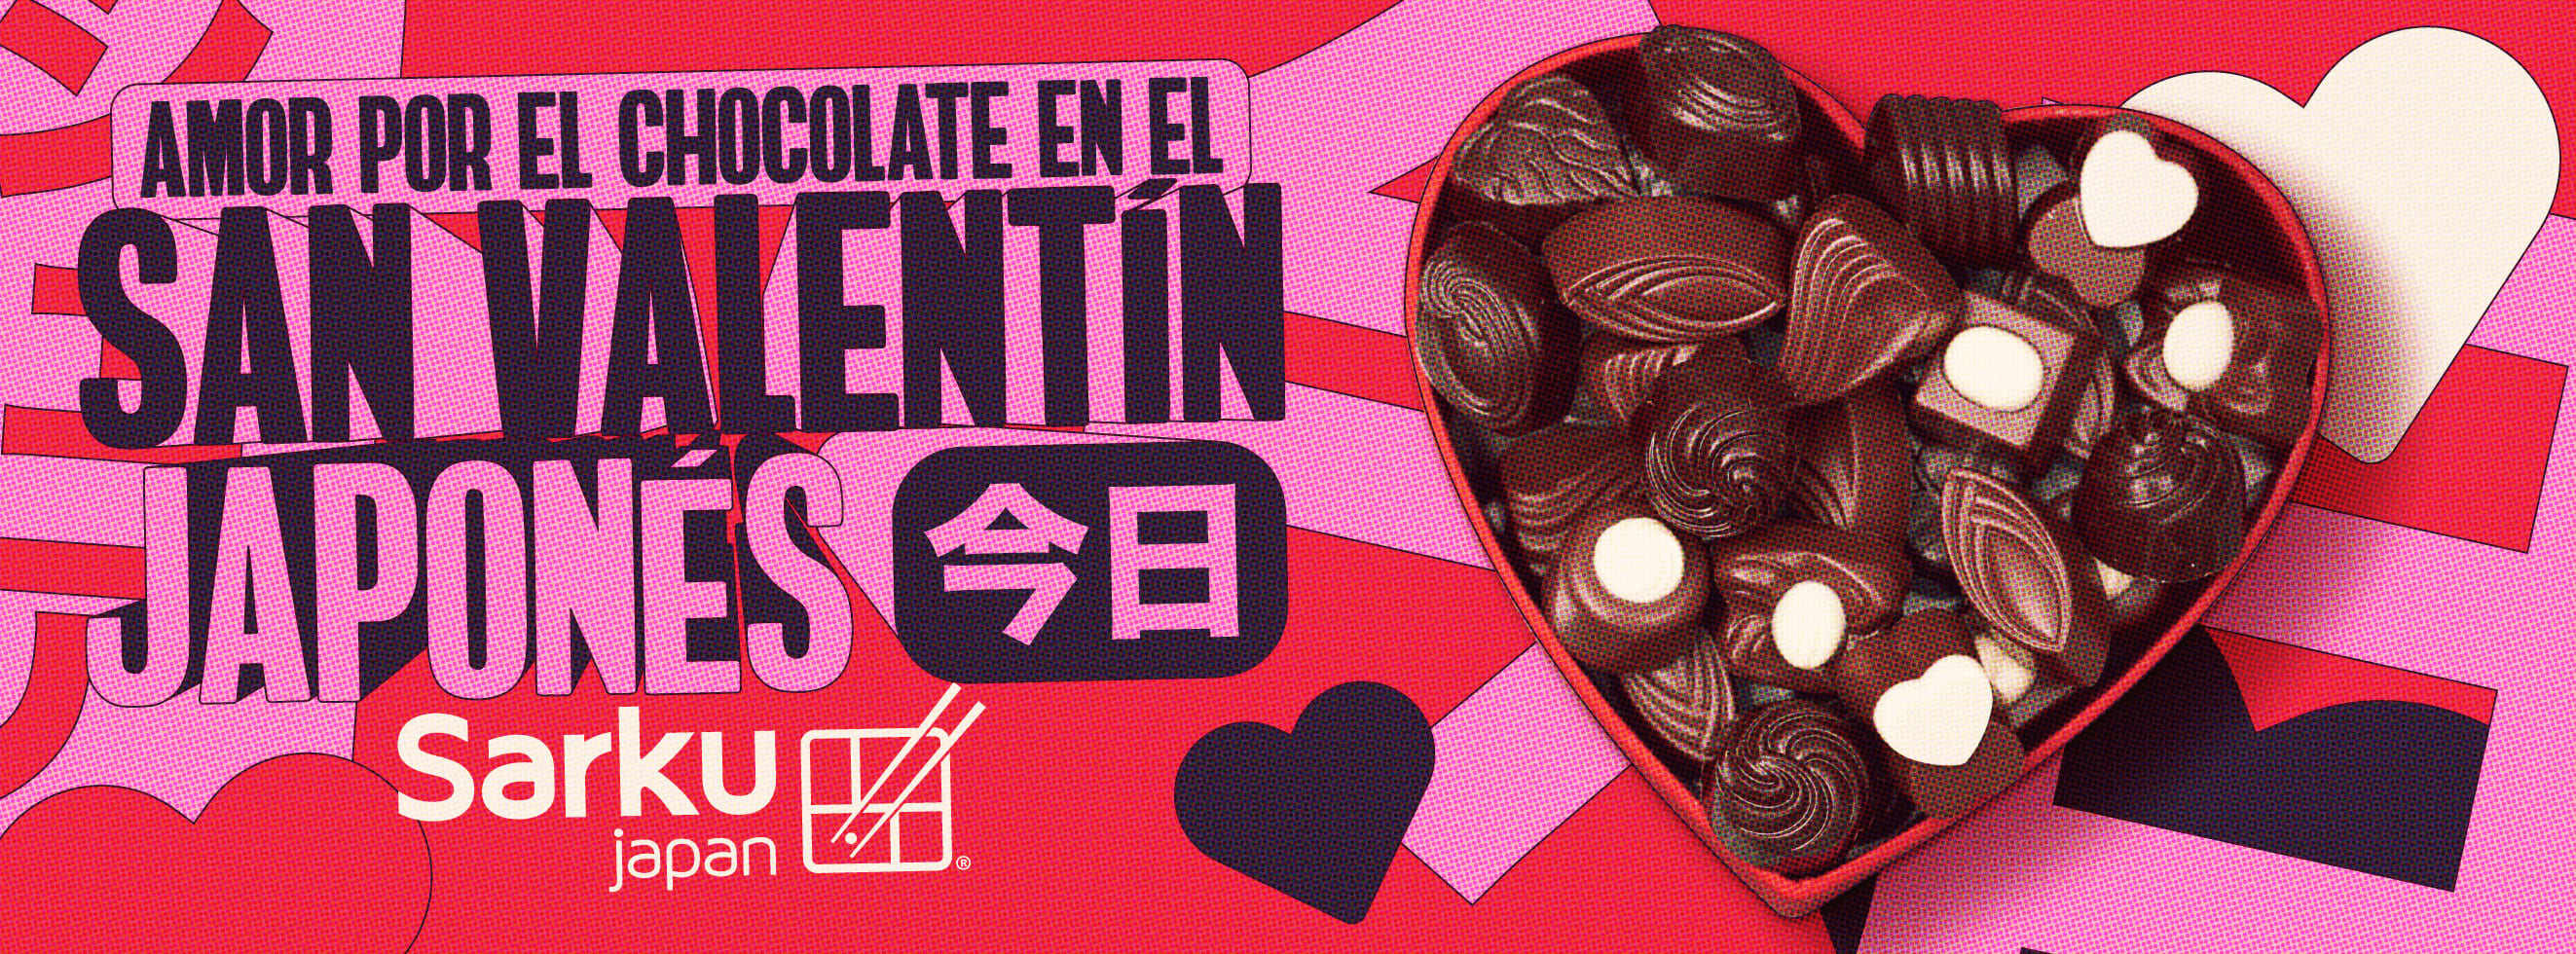 Amor por el chocolate en el San Valentín japonés